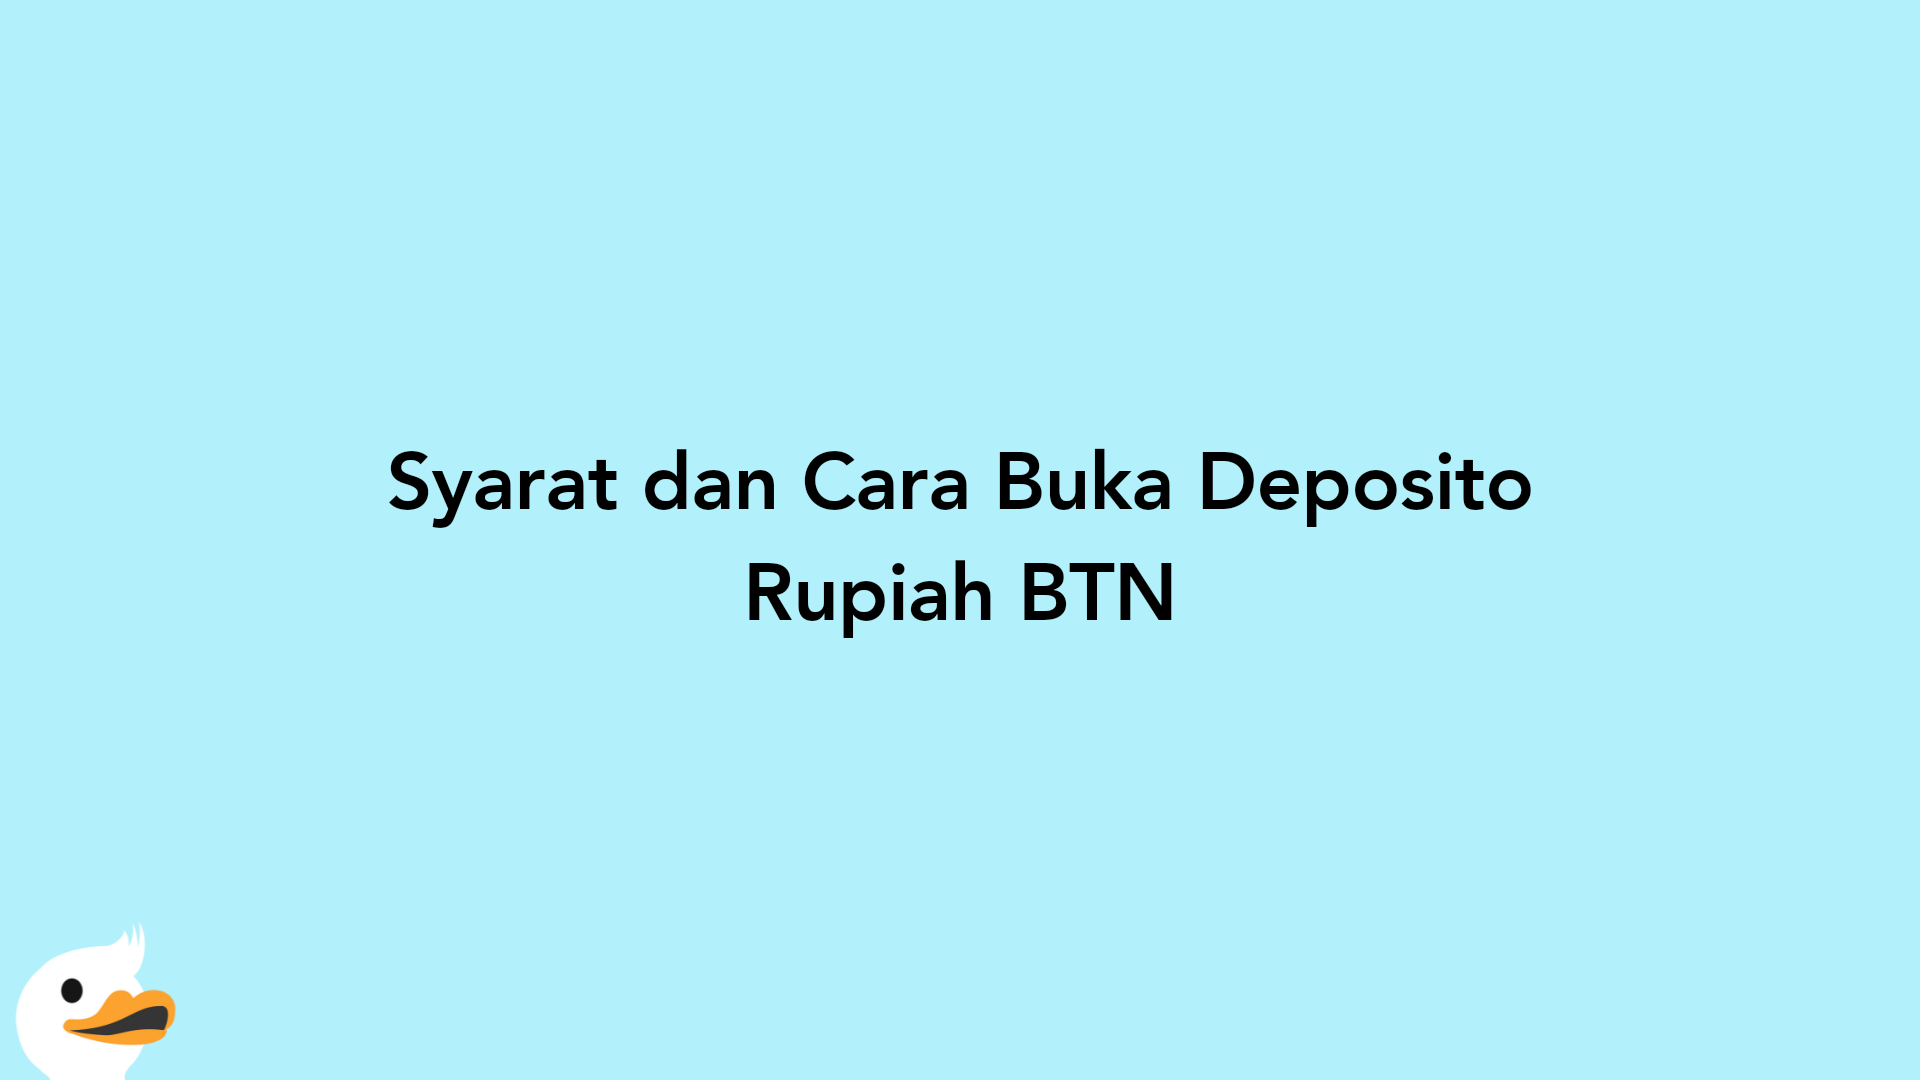 Syarat dan Cara Buka Deposito Rupiah BTN